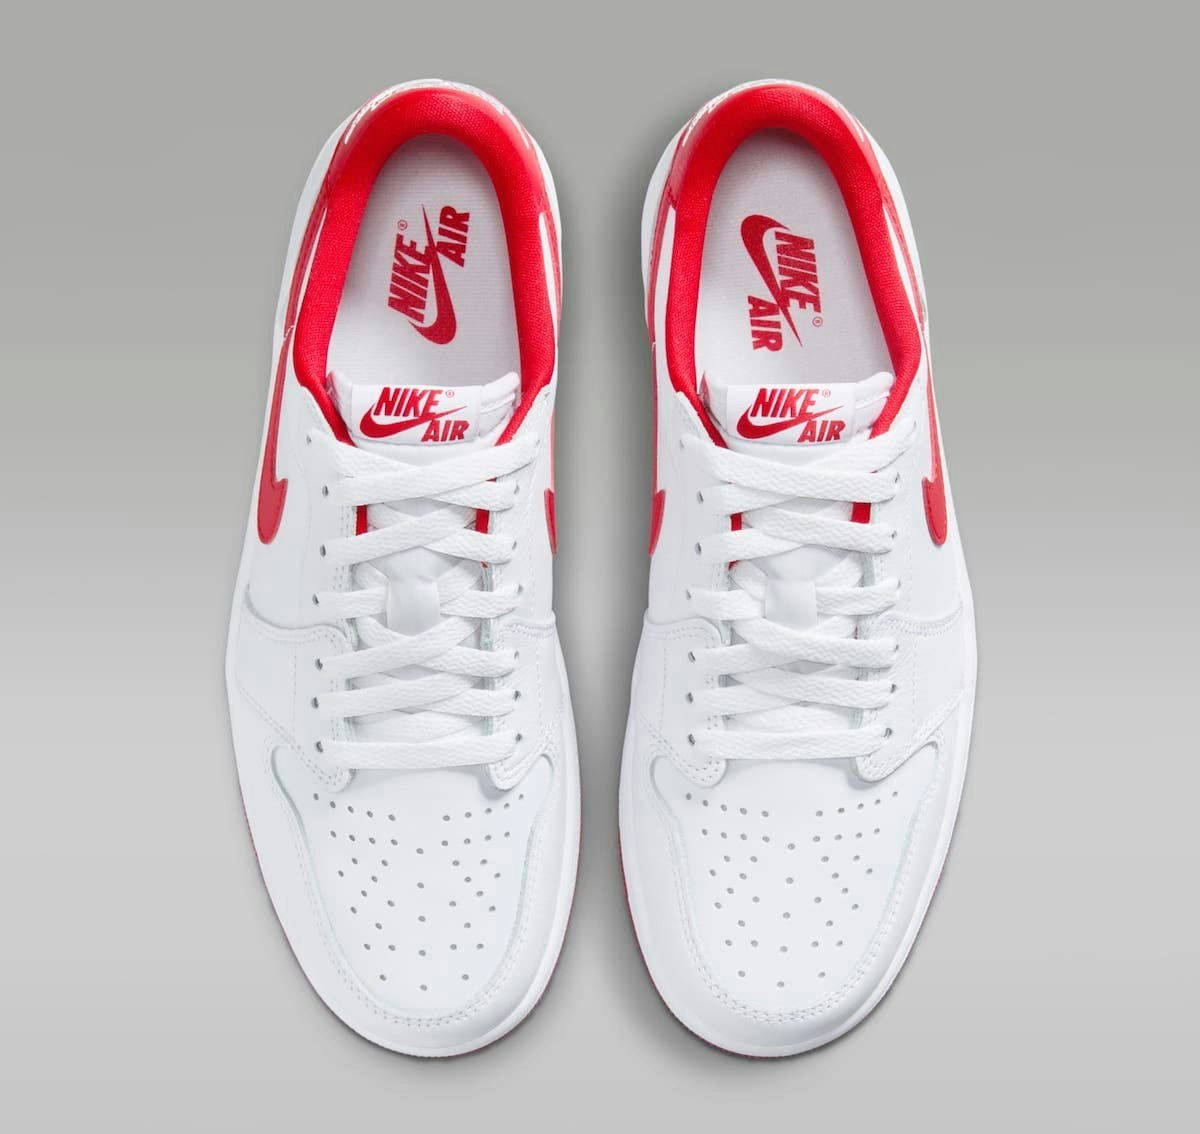 Air Jordan 1 Low OG “University Red”